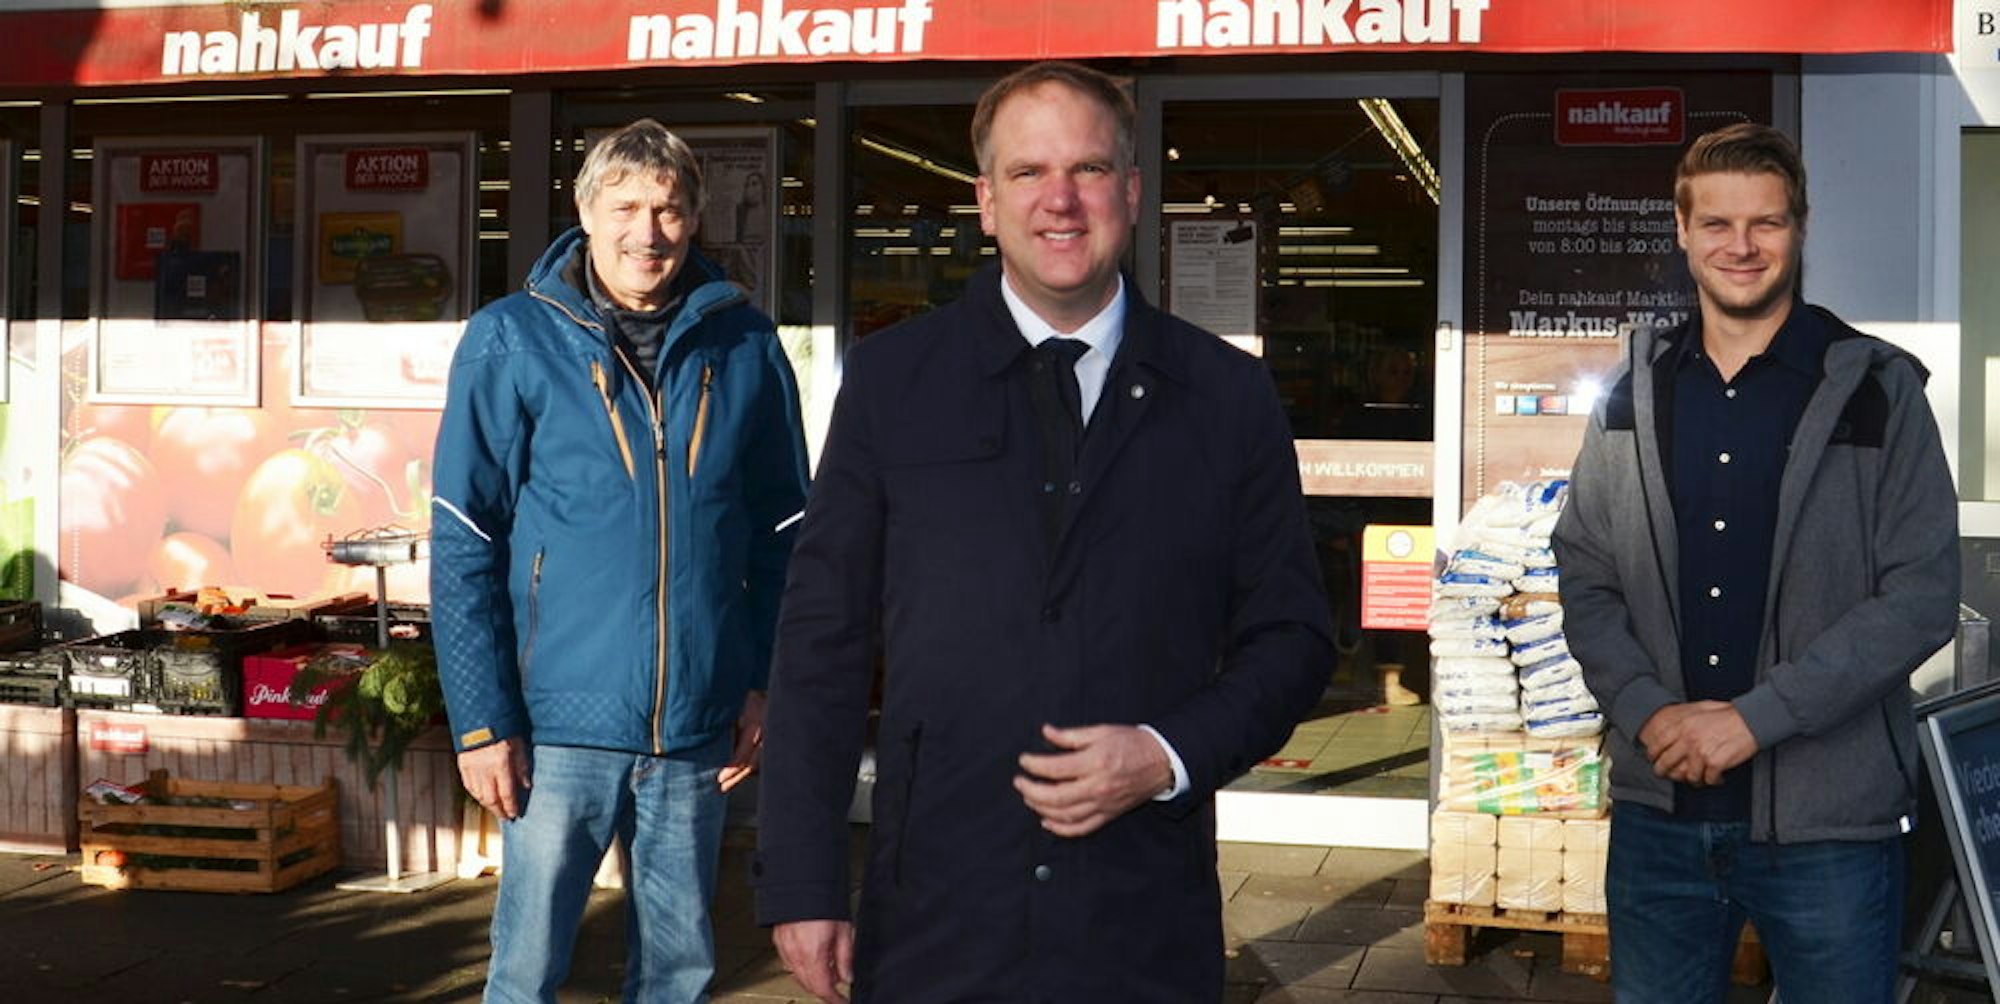 Mit dem neuen Pächter René Irrgang (r.) trafen sich Ortsvorsteher Lang (l.) und Bürgermeister Breuer vor dem Nahkauf.